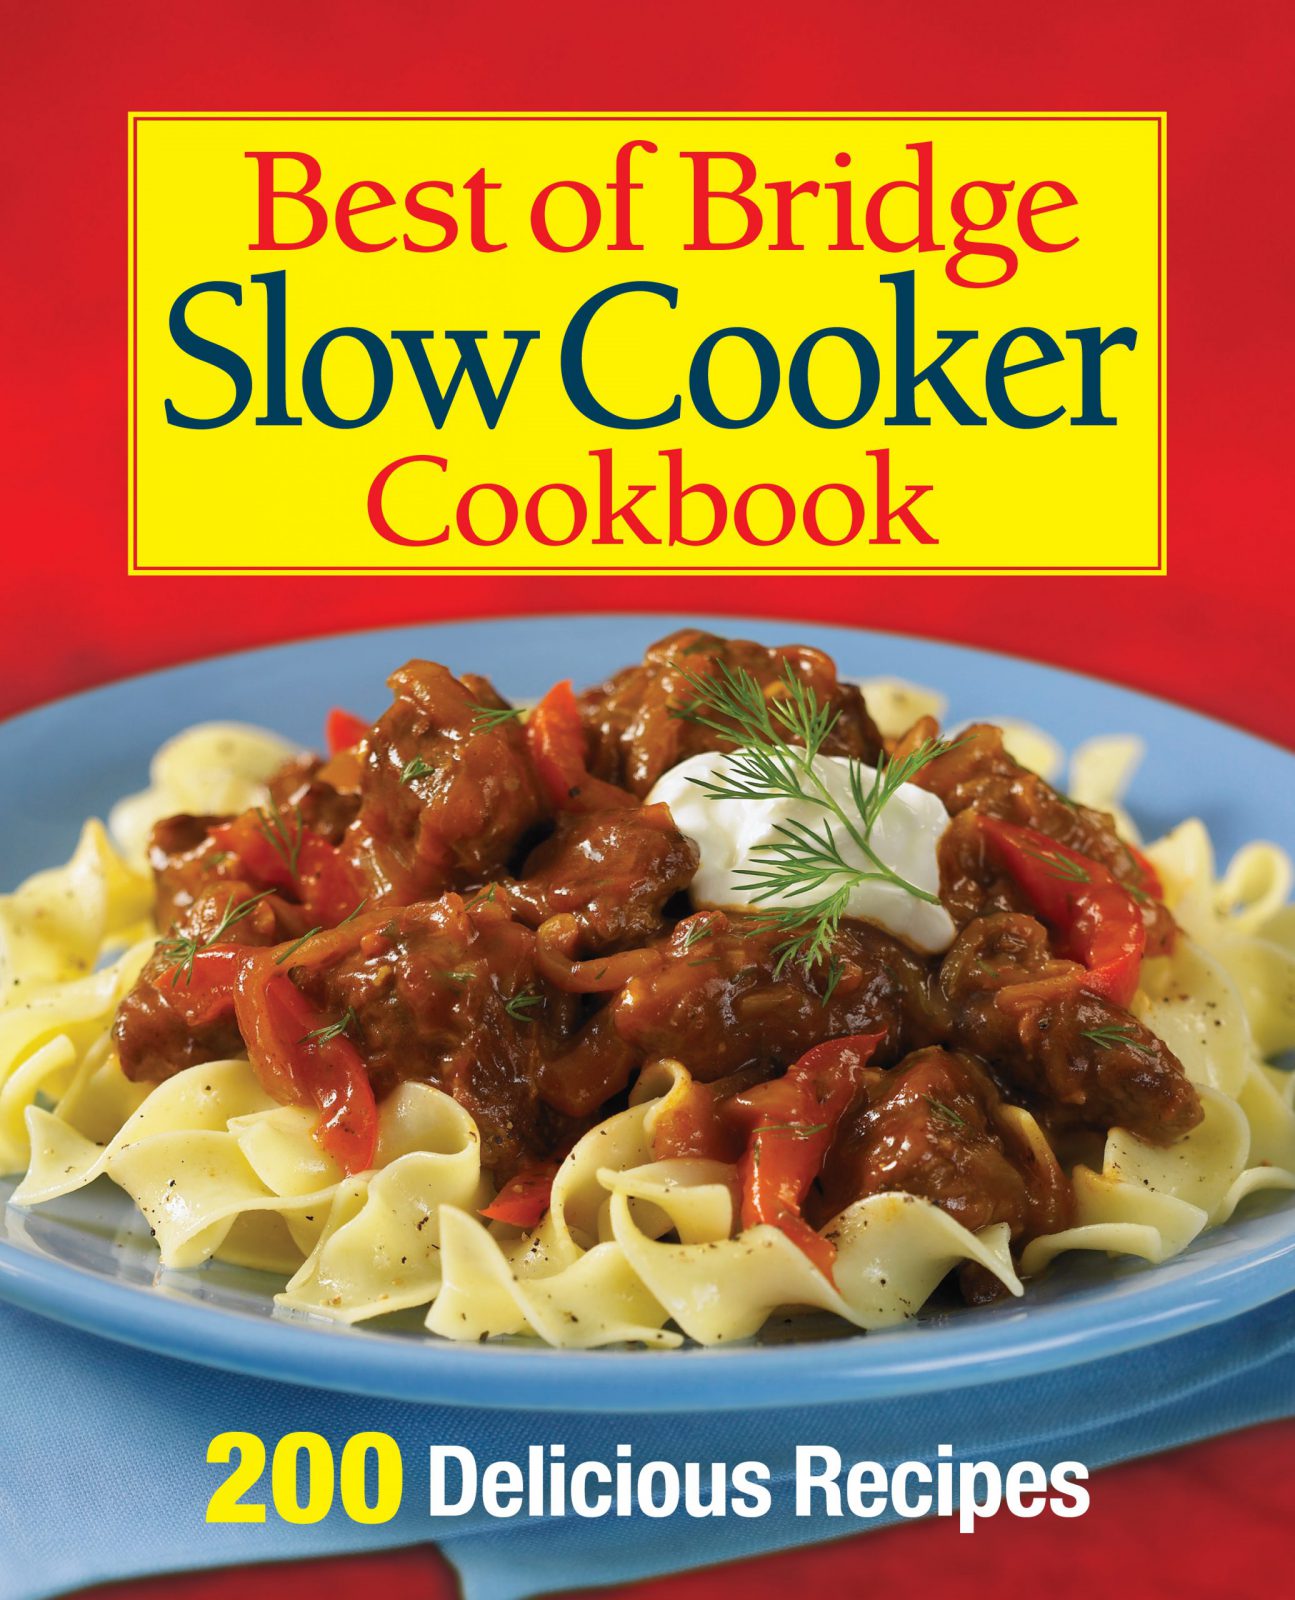 Best of Bridge Slow Cooker Cookbook